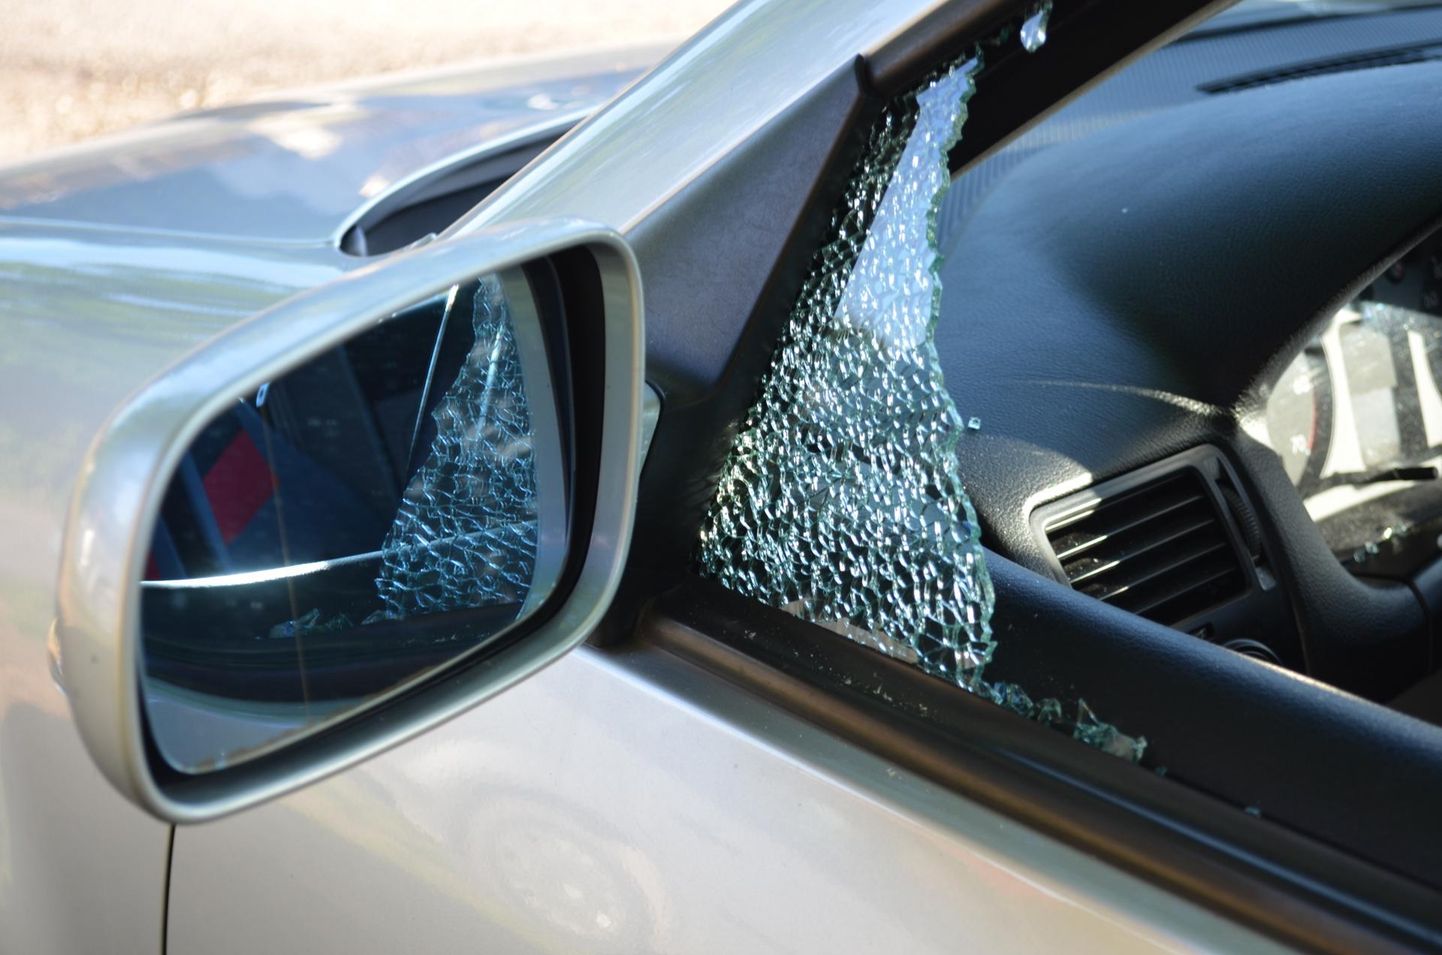 Разбитое окно автомобиля. Иллюстративное фото.